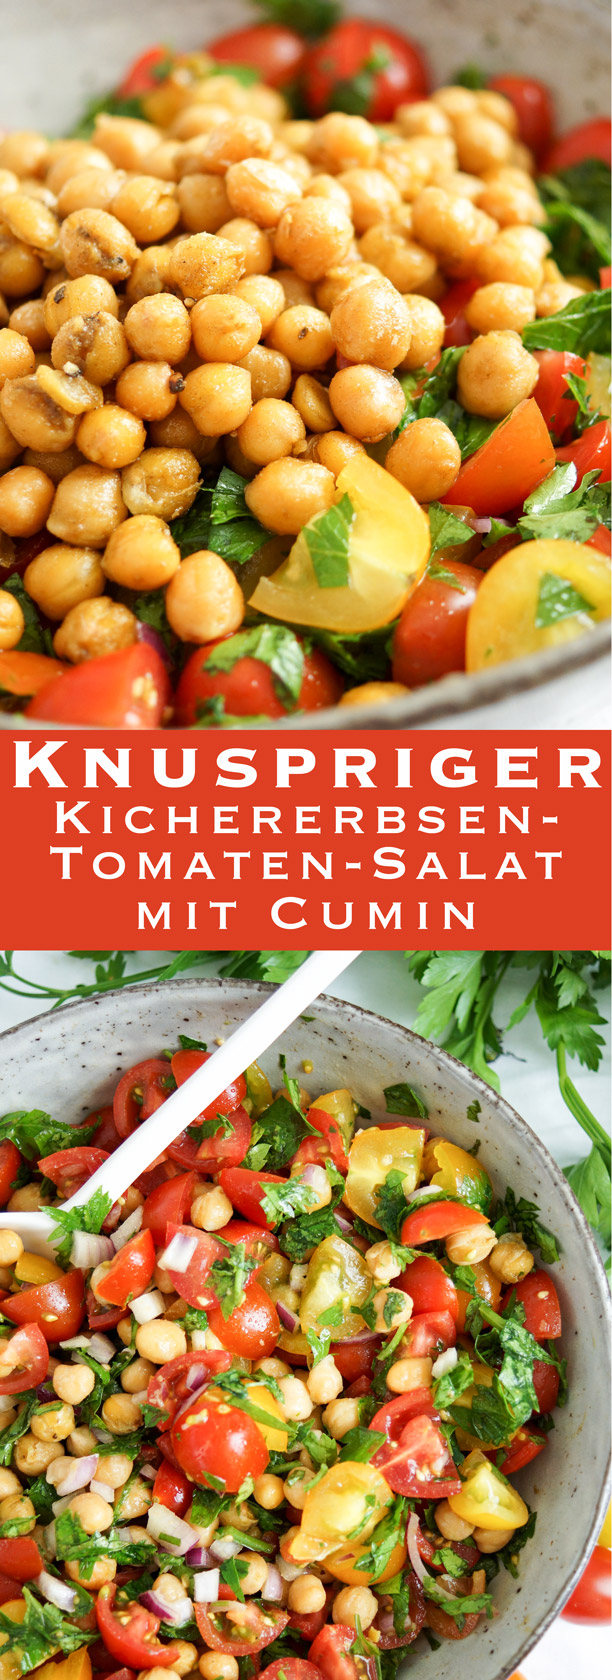 Einfache Rezept für Knusprige Kichererbsen-Tomaten-Salat (Vegan, Vegetarisch, Glutenfrei)